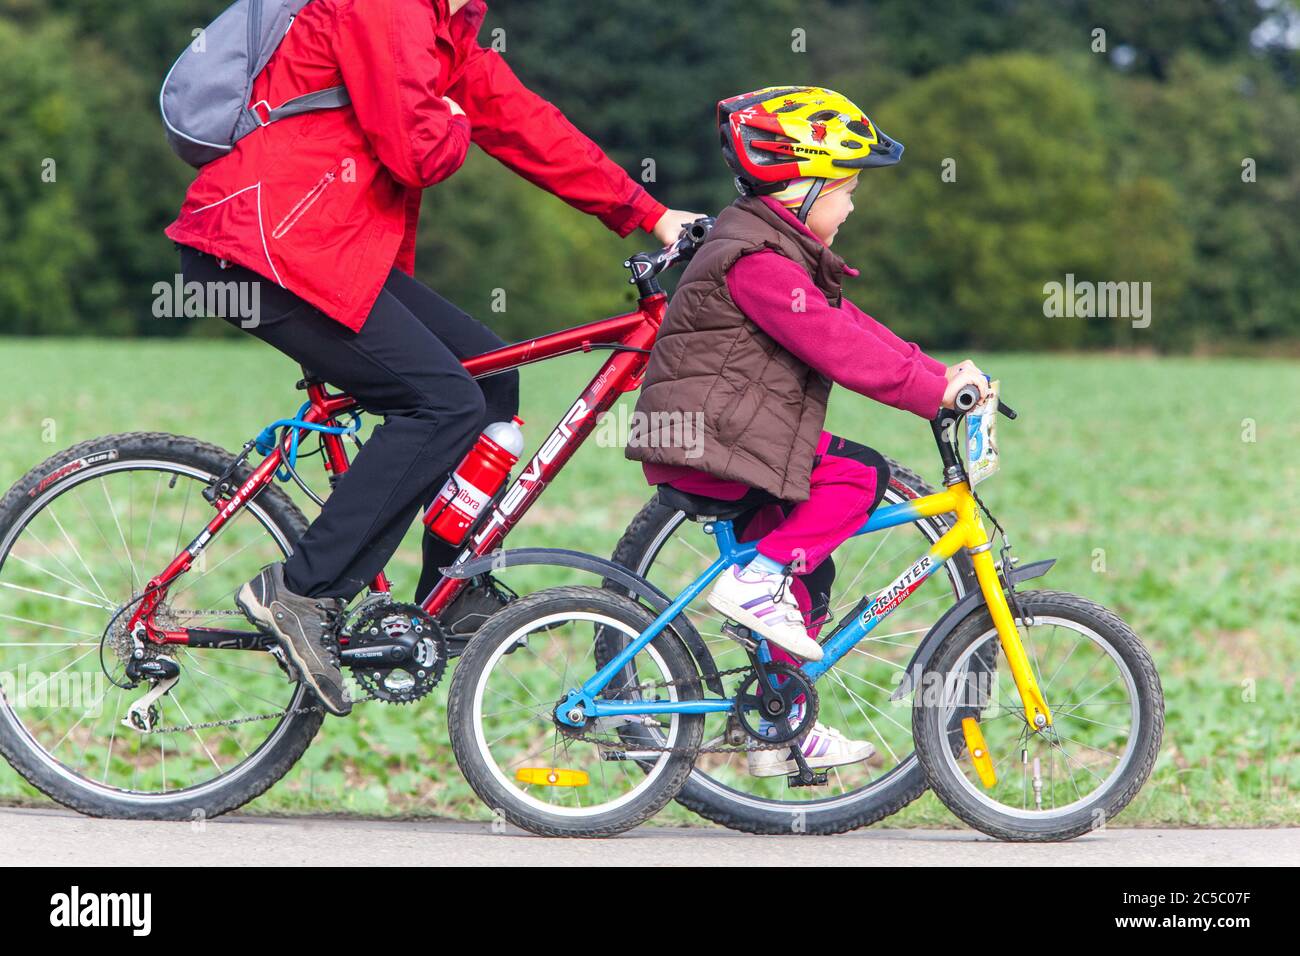 Vélo de randonnée pour enfant sur la piste cyclable, vélo pour enfant, casque, vélo d'équitation pour enfant avec casque casque casque de vélo pour enfant Banque D'Images